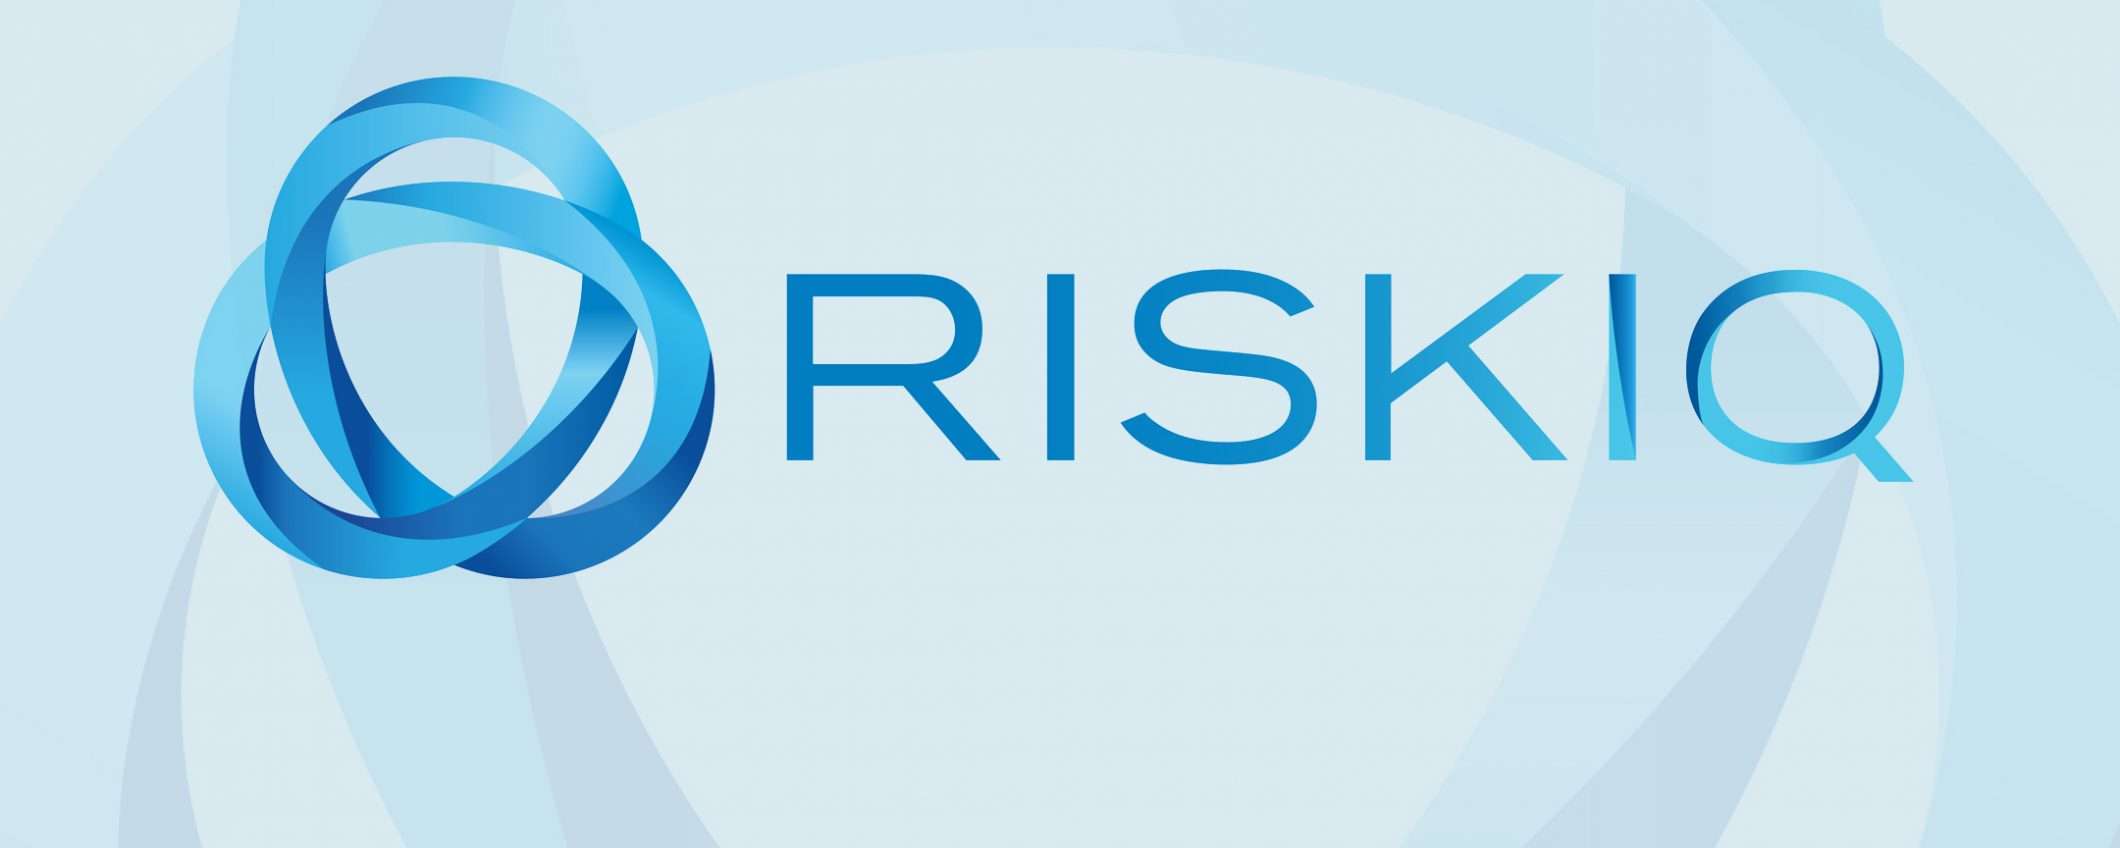 RiskIQ è la nuova acquisizione Microsoft (update)